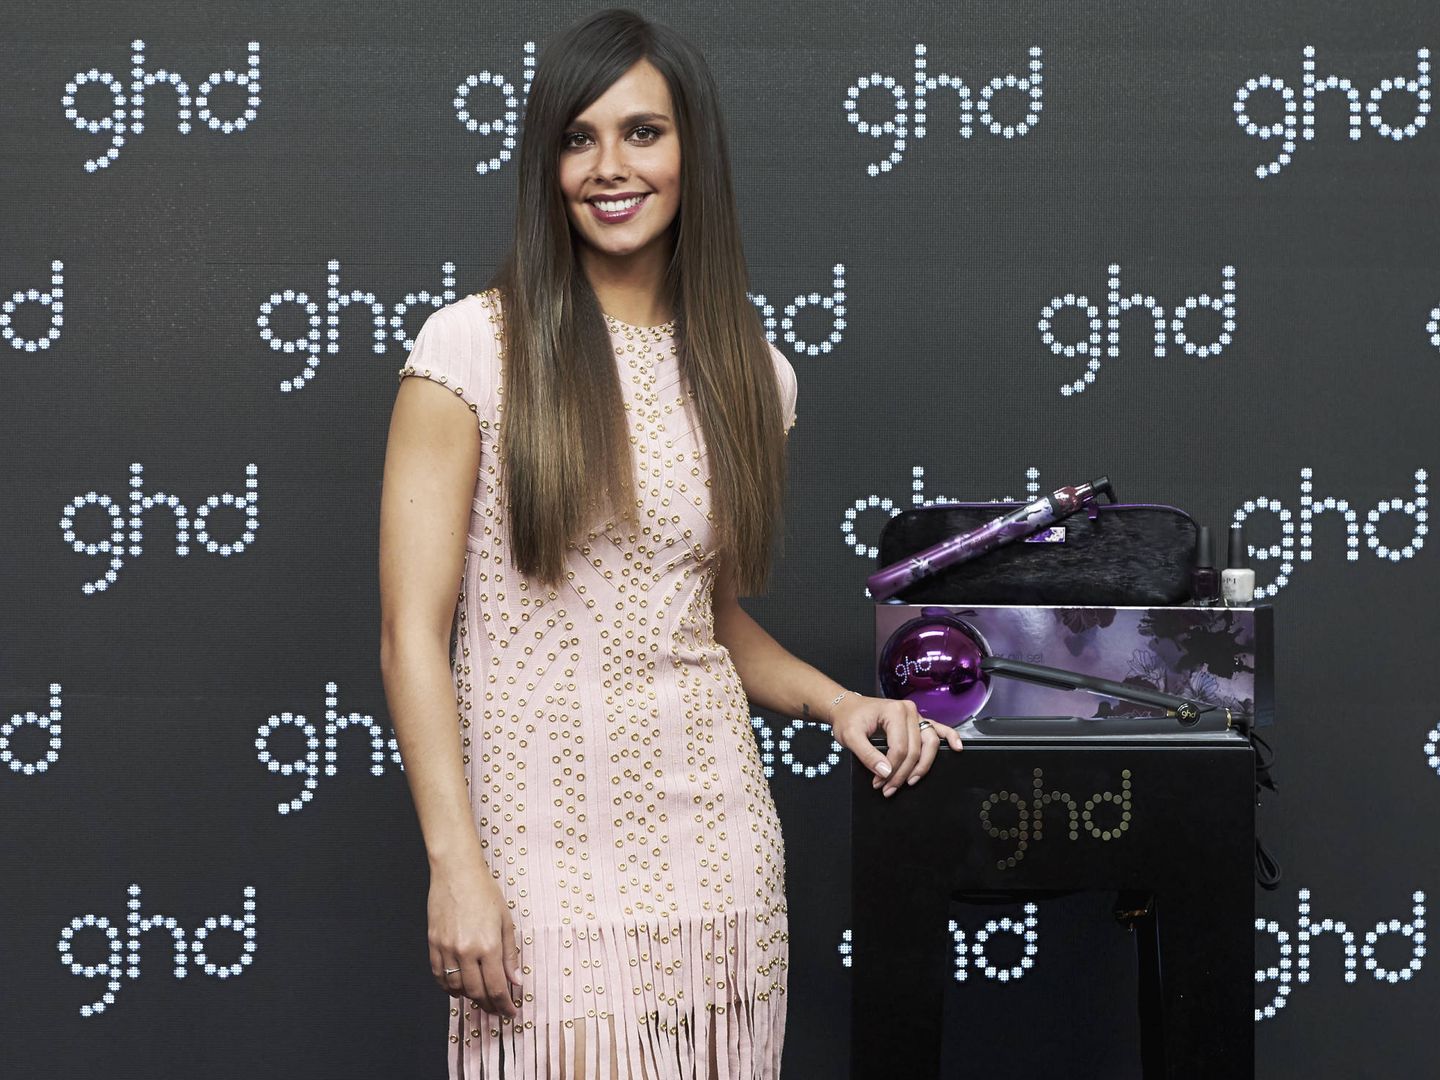 La presentadora Cristina Pedroche posa durante una presentación de ghd en Madrid (Getty Images)